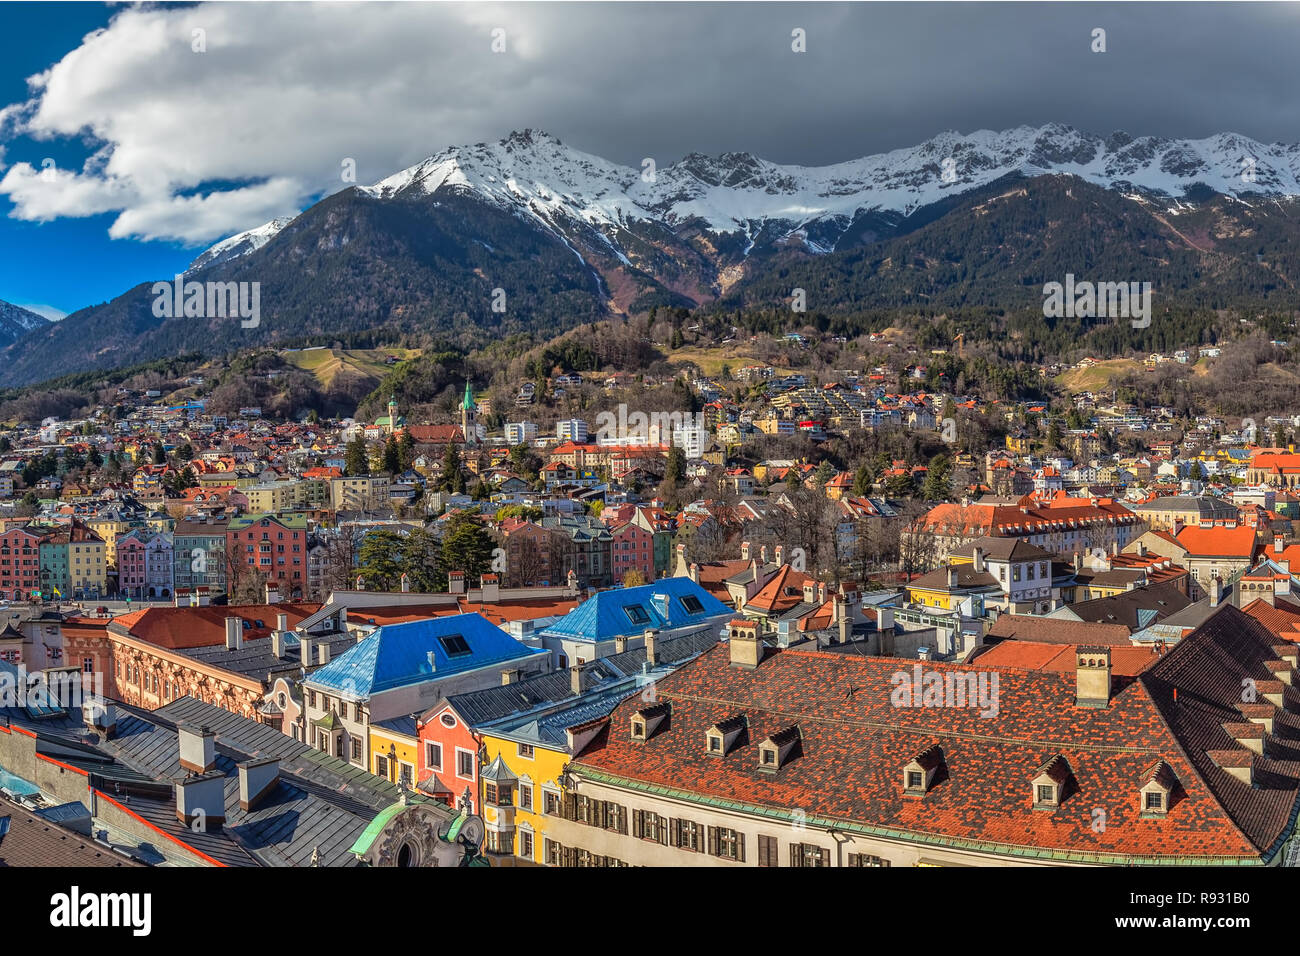 INNSBRUCK, Austria - 11 Marzo 2017 - La popolazione della città di Innsbruck centro sotto la torre Stadtturm. È la città capitale del Tirolo in Austria occidentale, Europa. Foto Stock